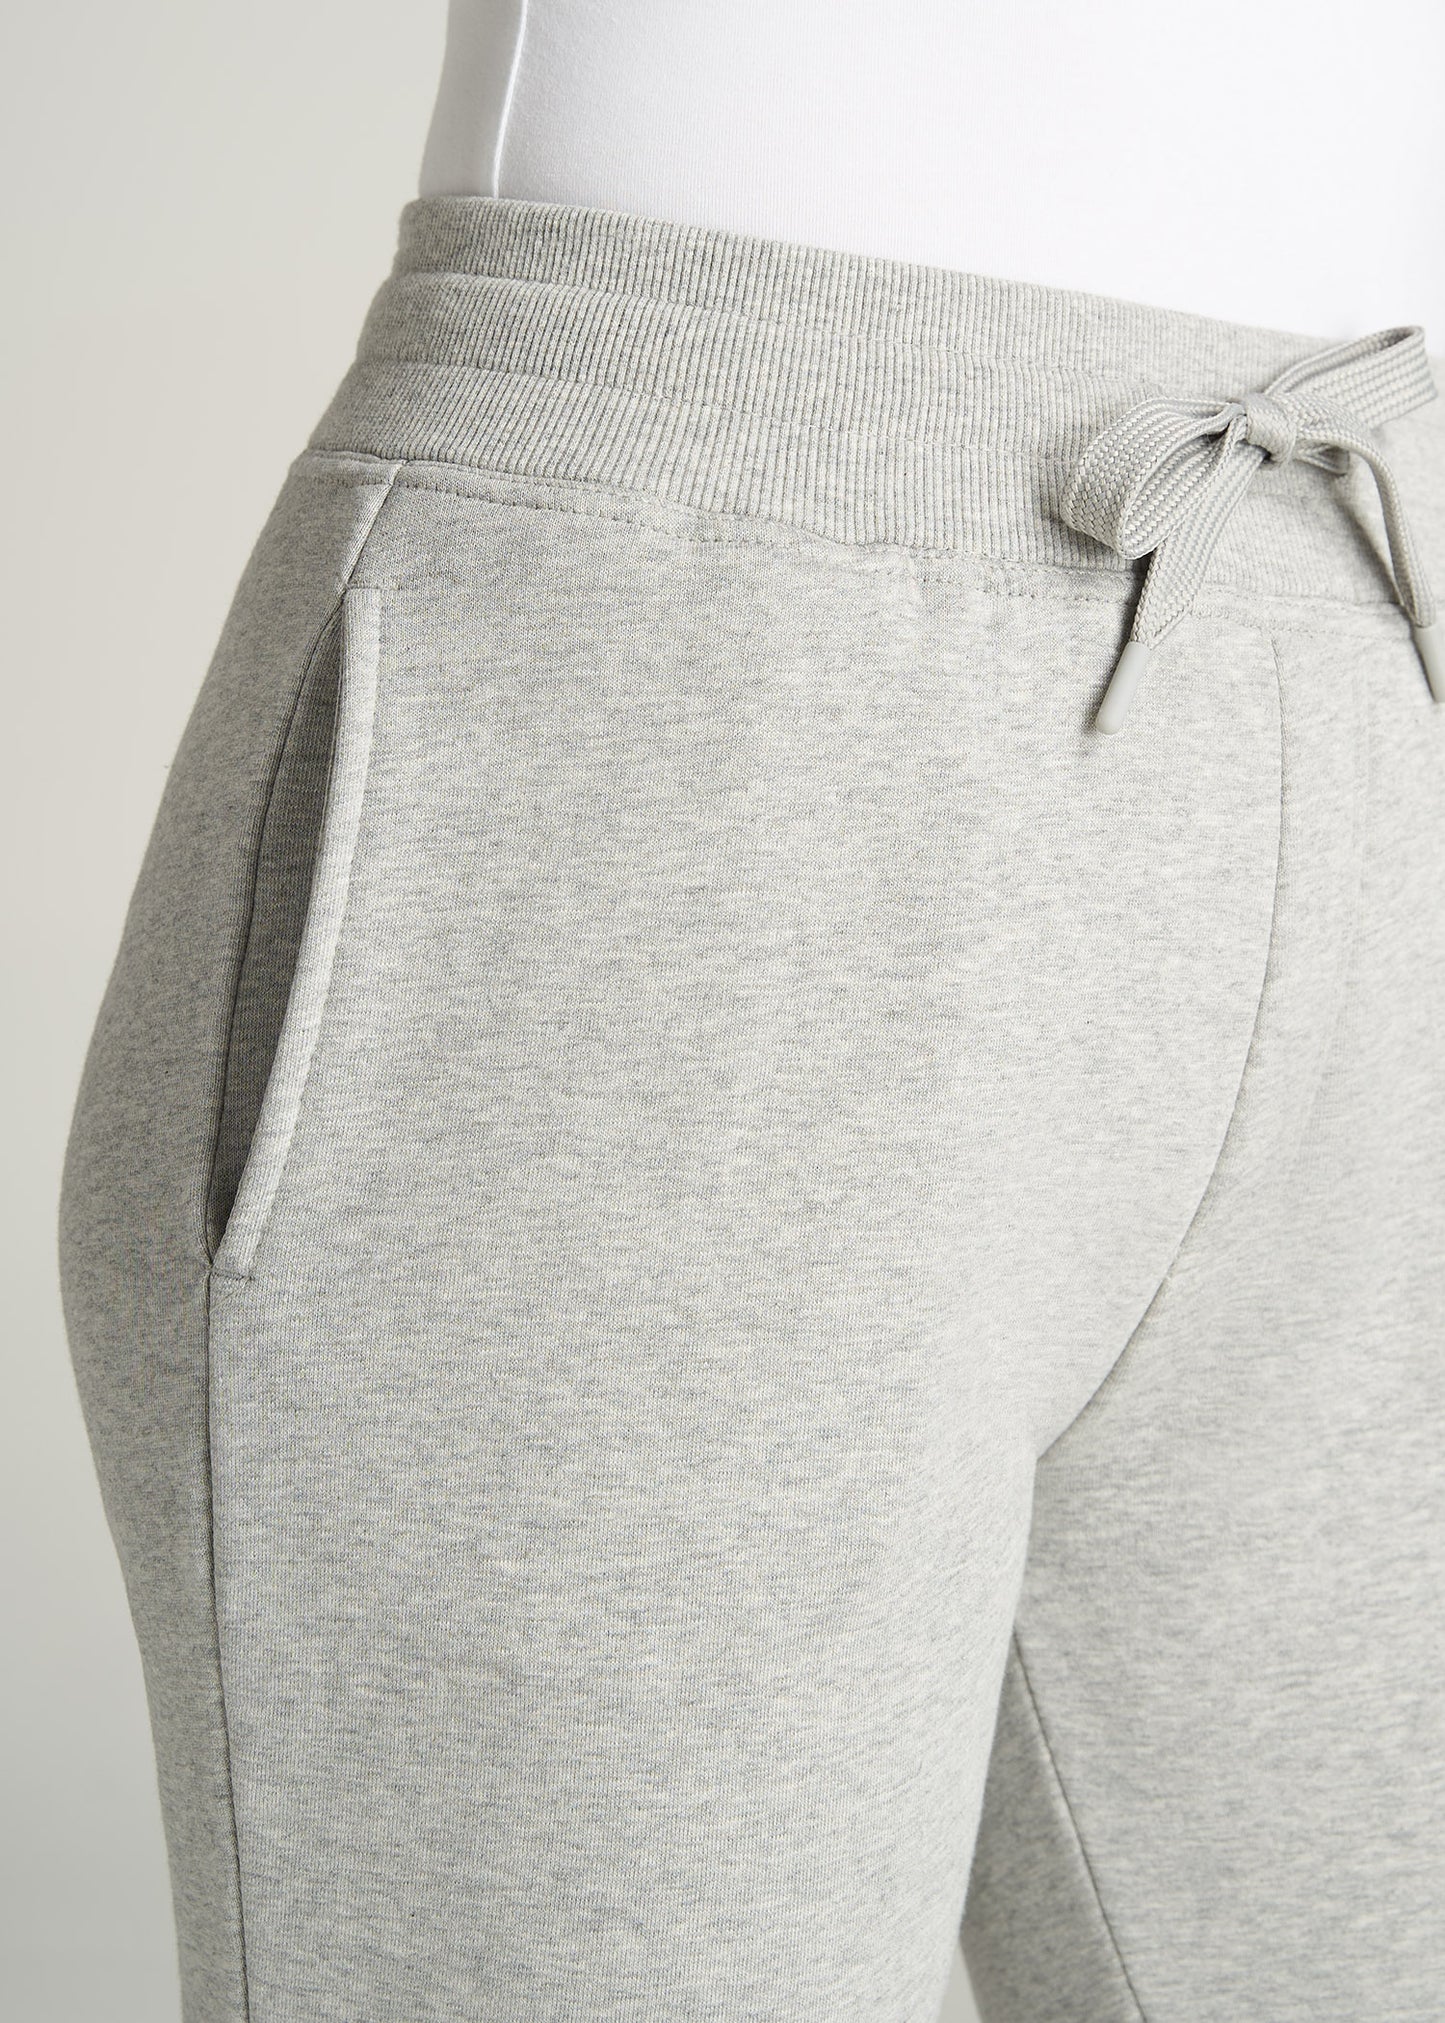    American-Tall-Women-WKND-Fleece-OpenBottom-Sweatpants-GreyMix-detail